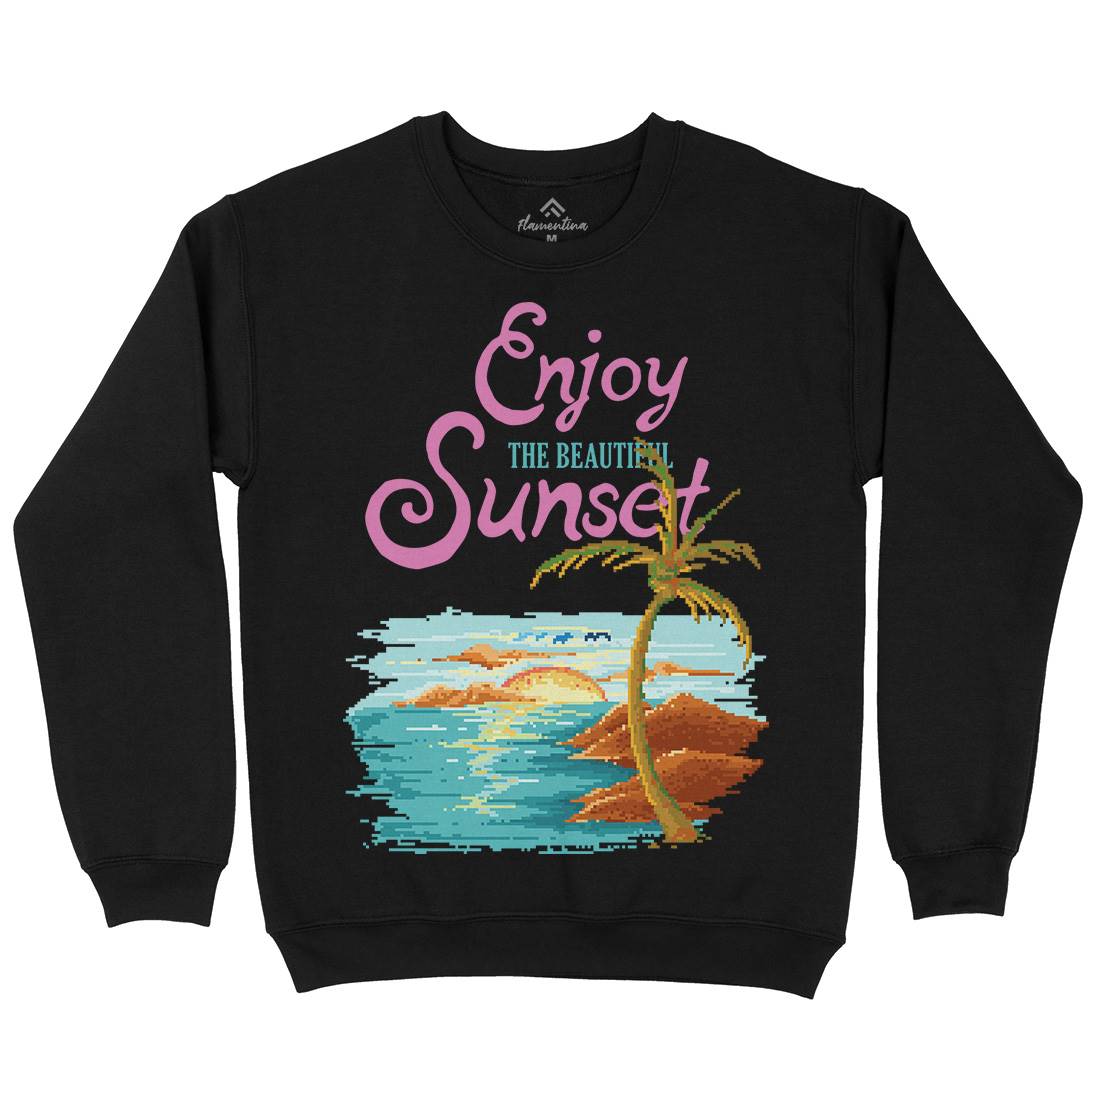 Beautiful Sunset Kids Crew Neck Sweatshirt Nature B887